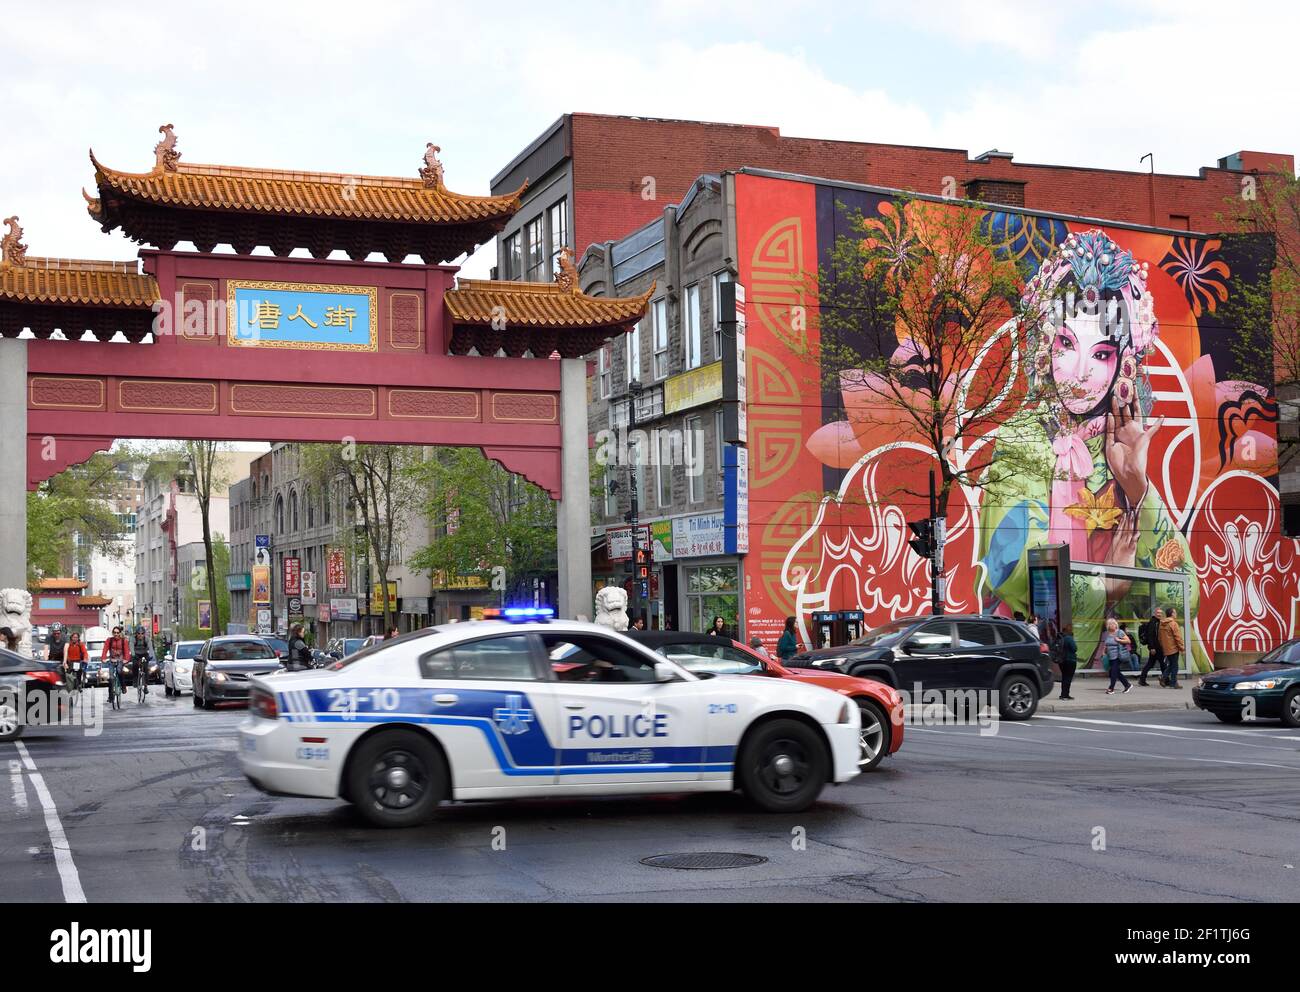 Das chinesische Bogentor, Wandgemälde, Menschen und Verkehr am Eingang der chinesischen Stadt in der St Laurent Straße in Montreal, Stadt, Kanada, Kanada, Provinz, Québec. Stockfoto